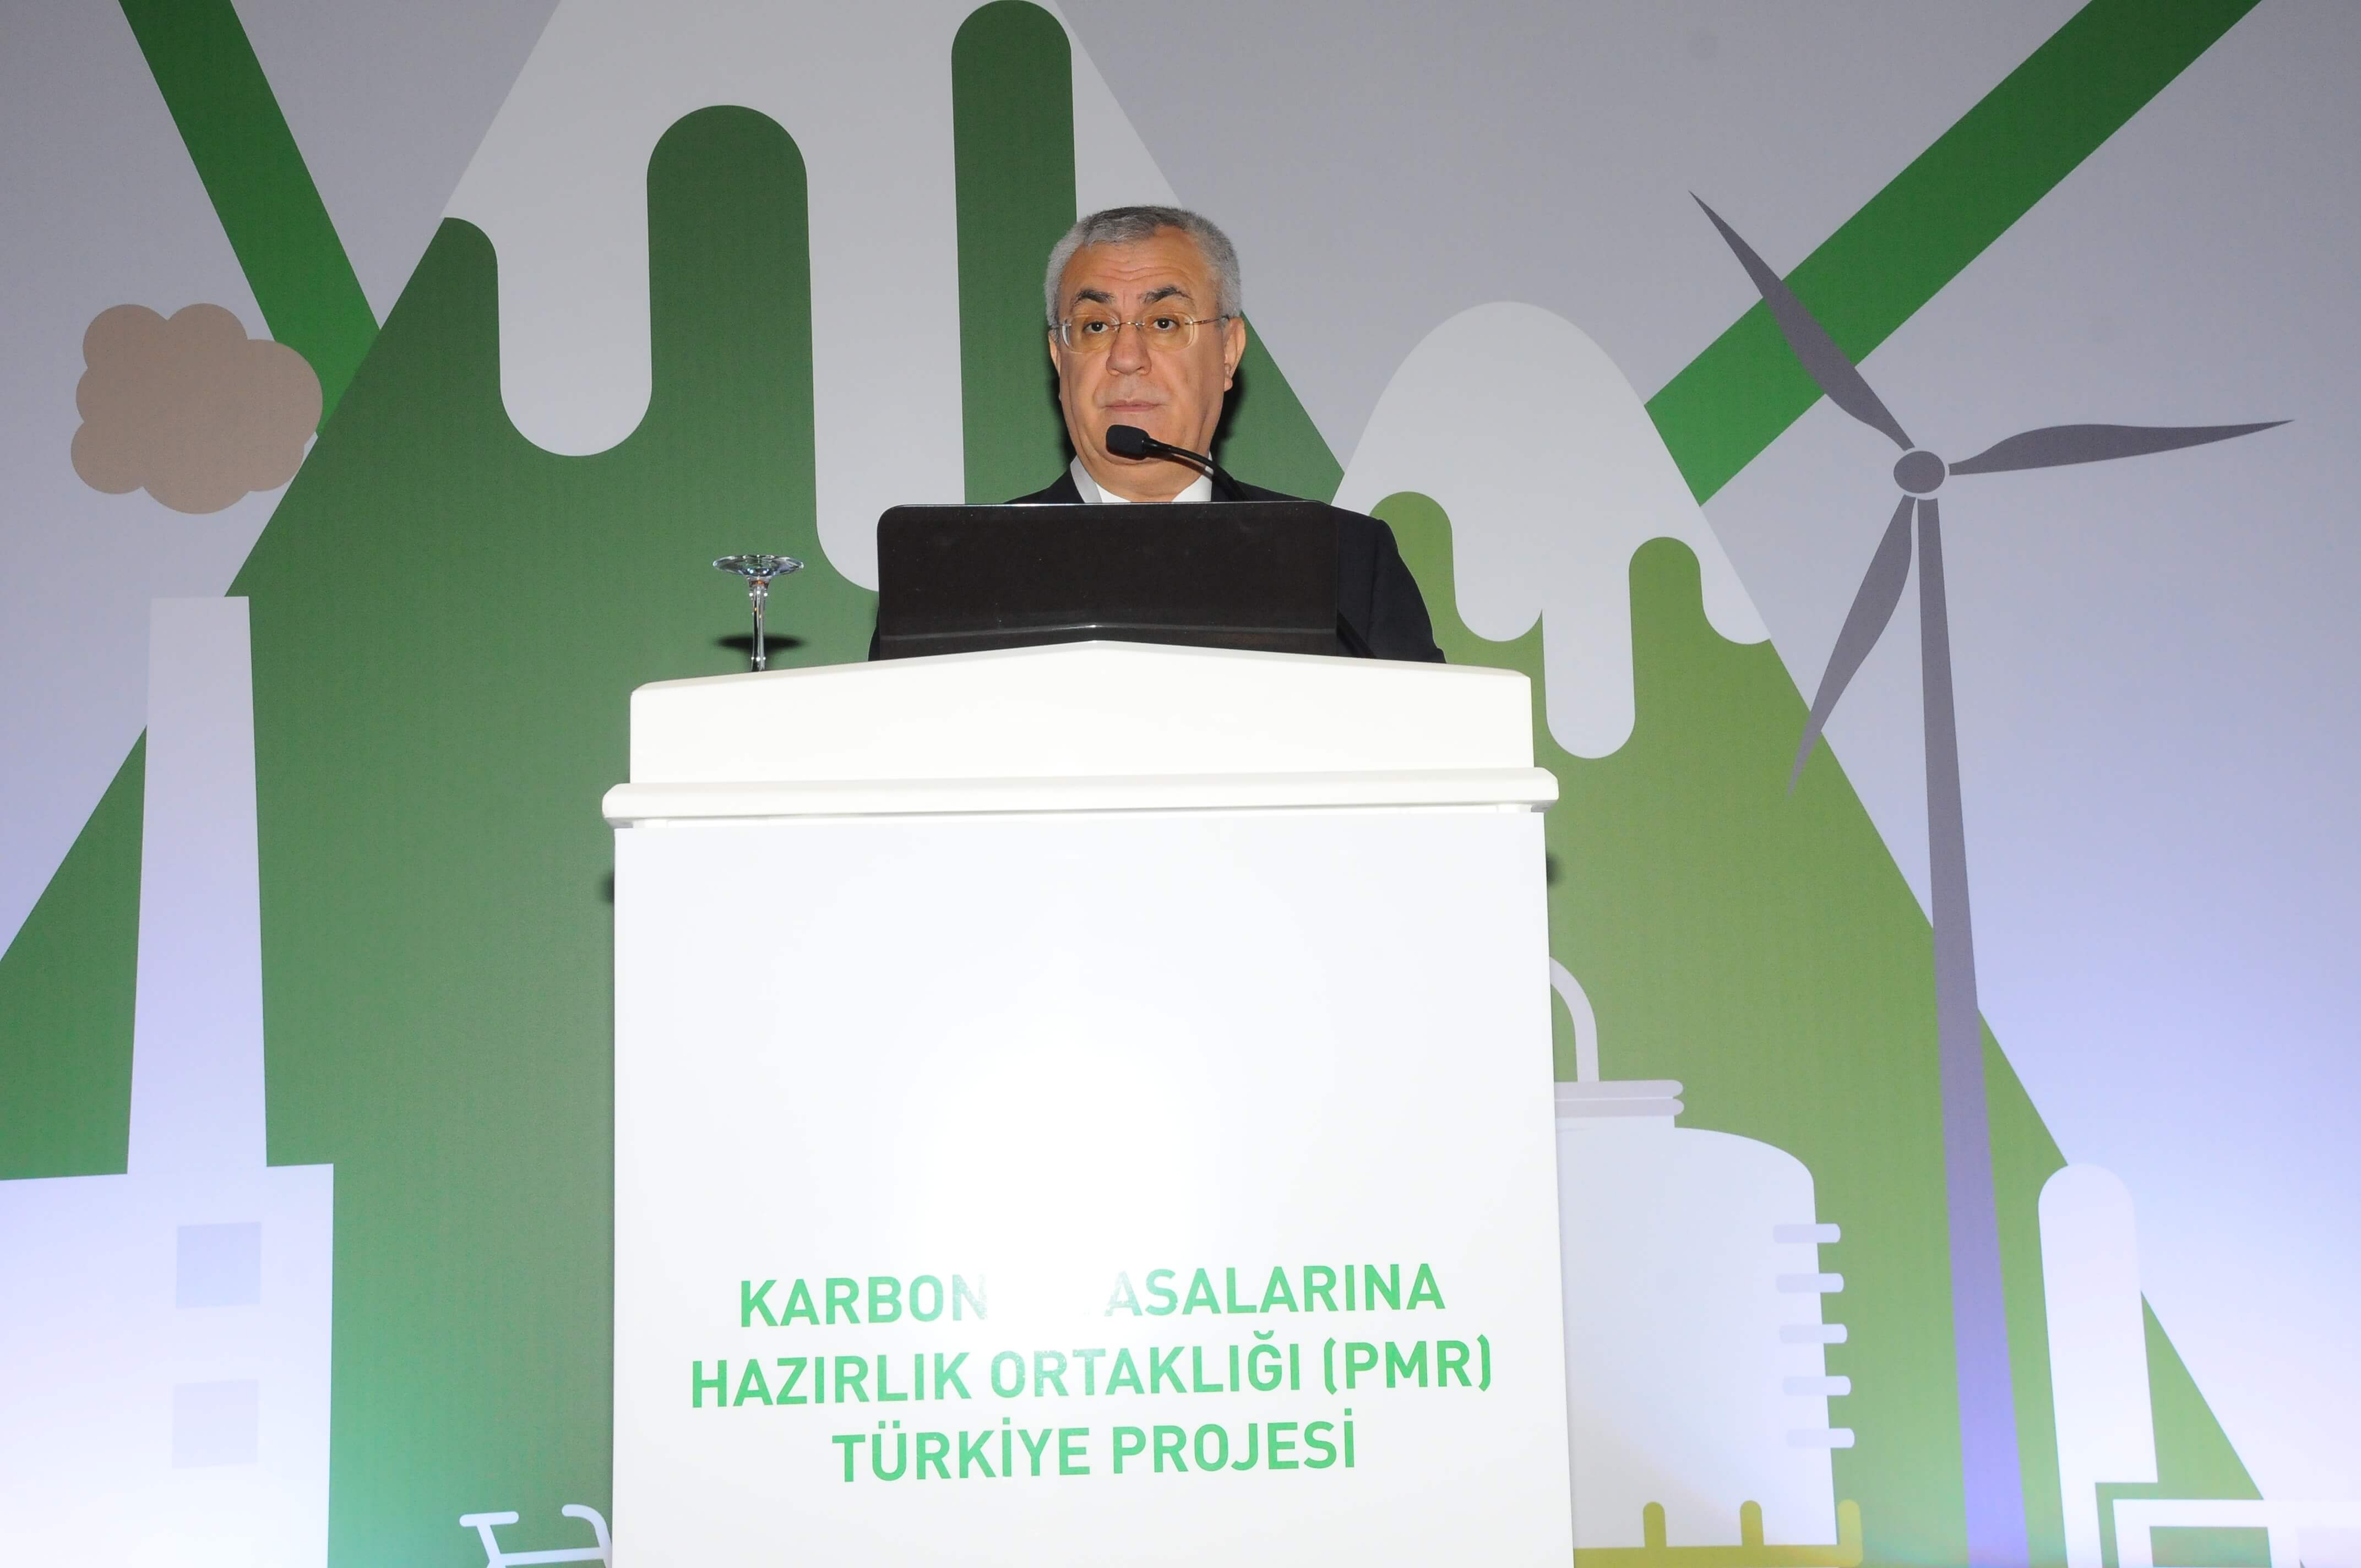 Zeki Kıvanç, Karbon Piyasalarına Hazırlık Ortaklığı Projesi toplantısına katıldı